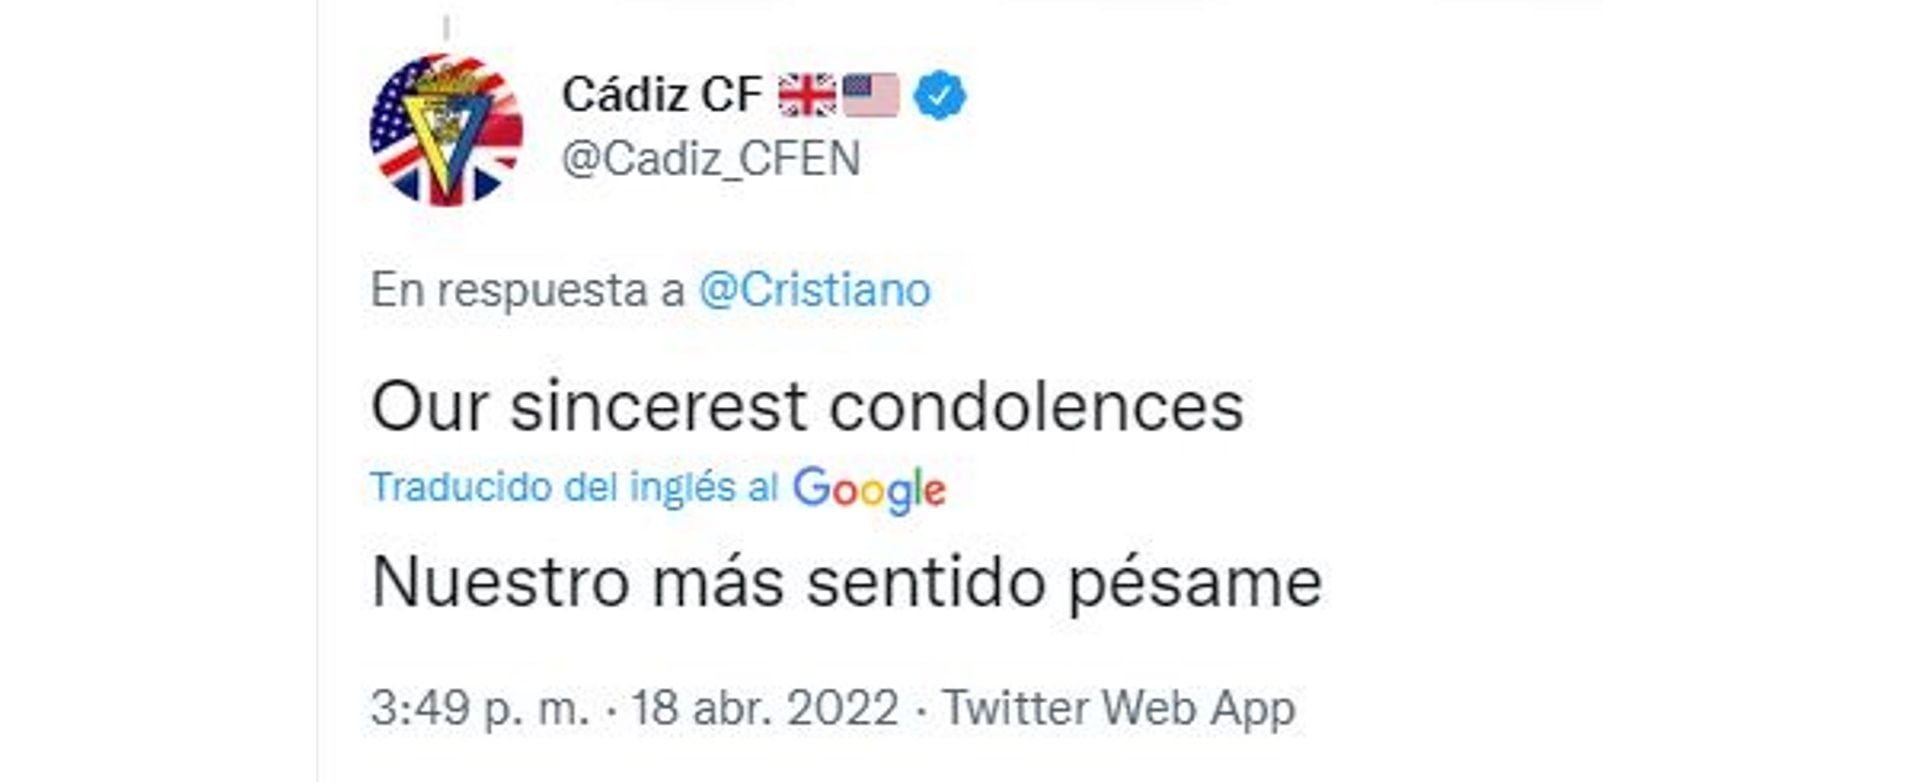 El mensaje del club Cadiz de España